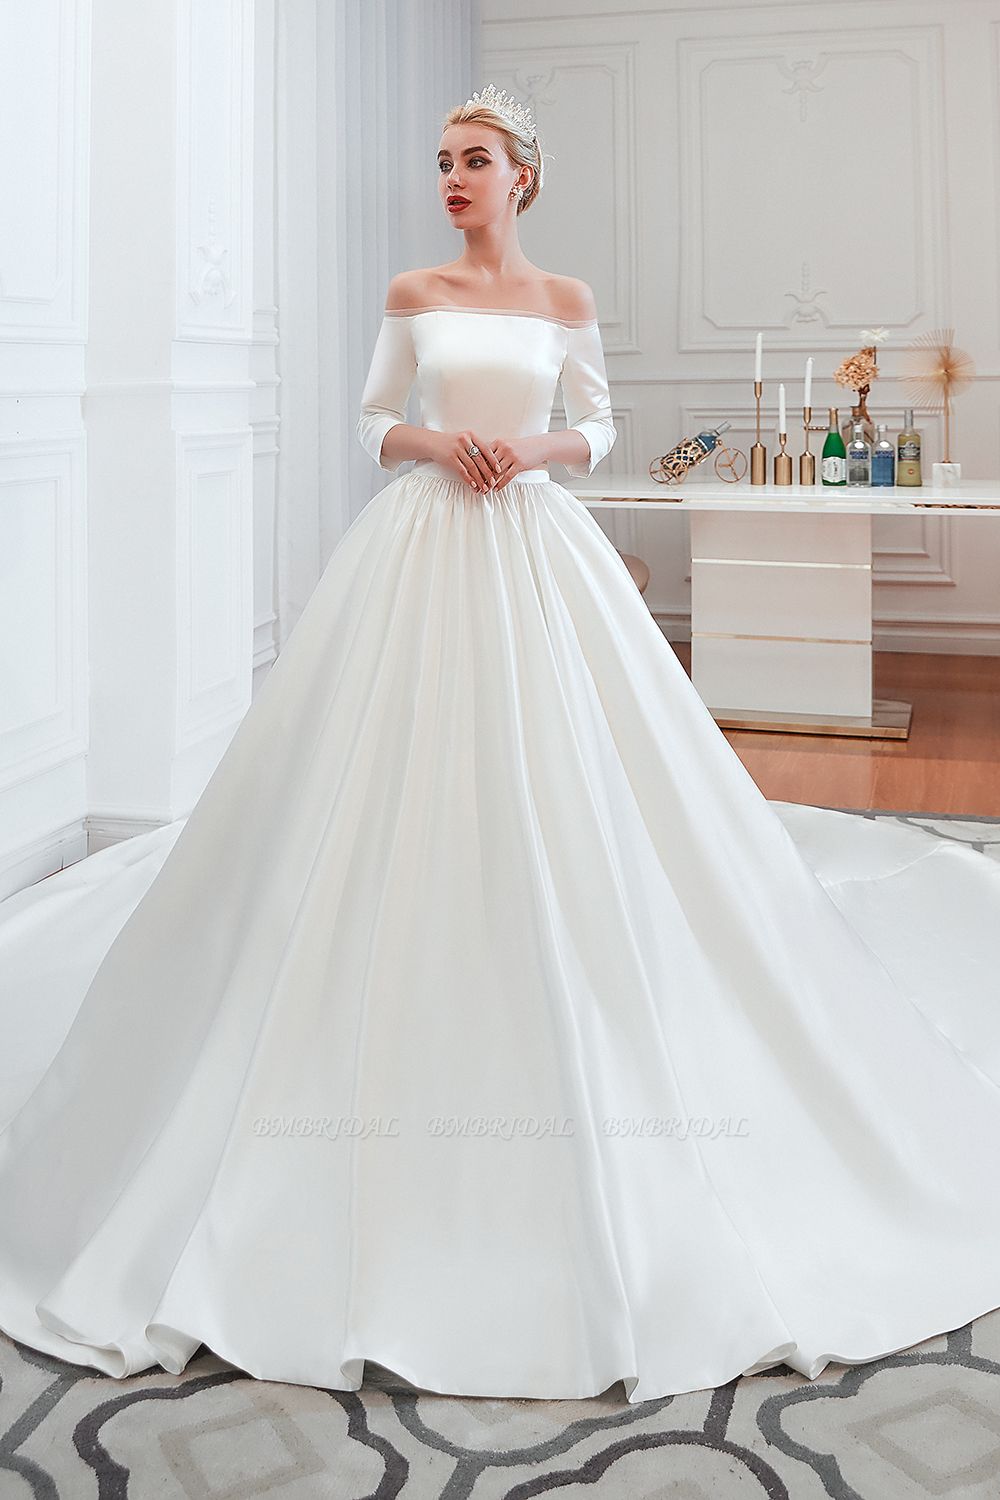 The Best Elie Saab Wedding Dresses | Woman Getting Married